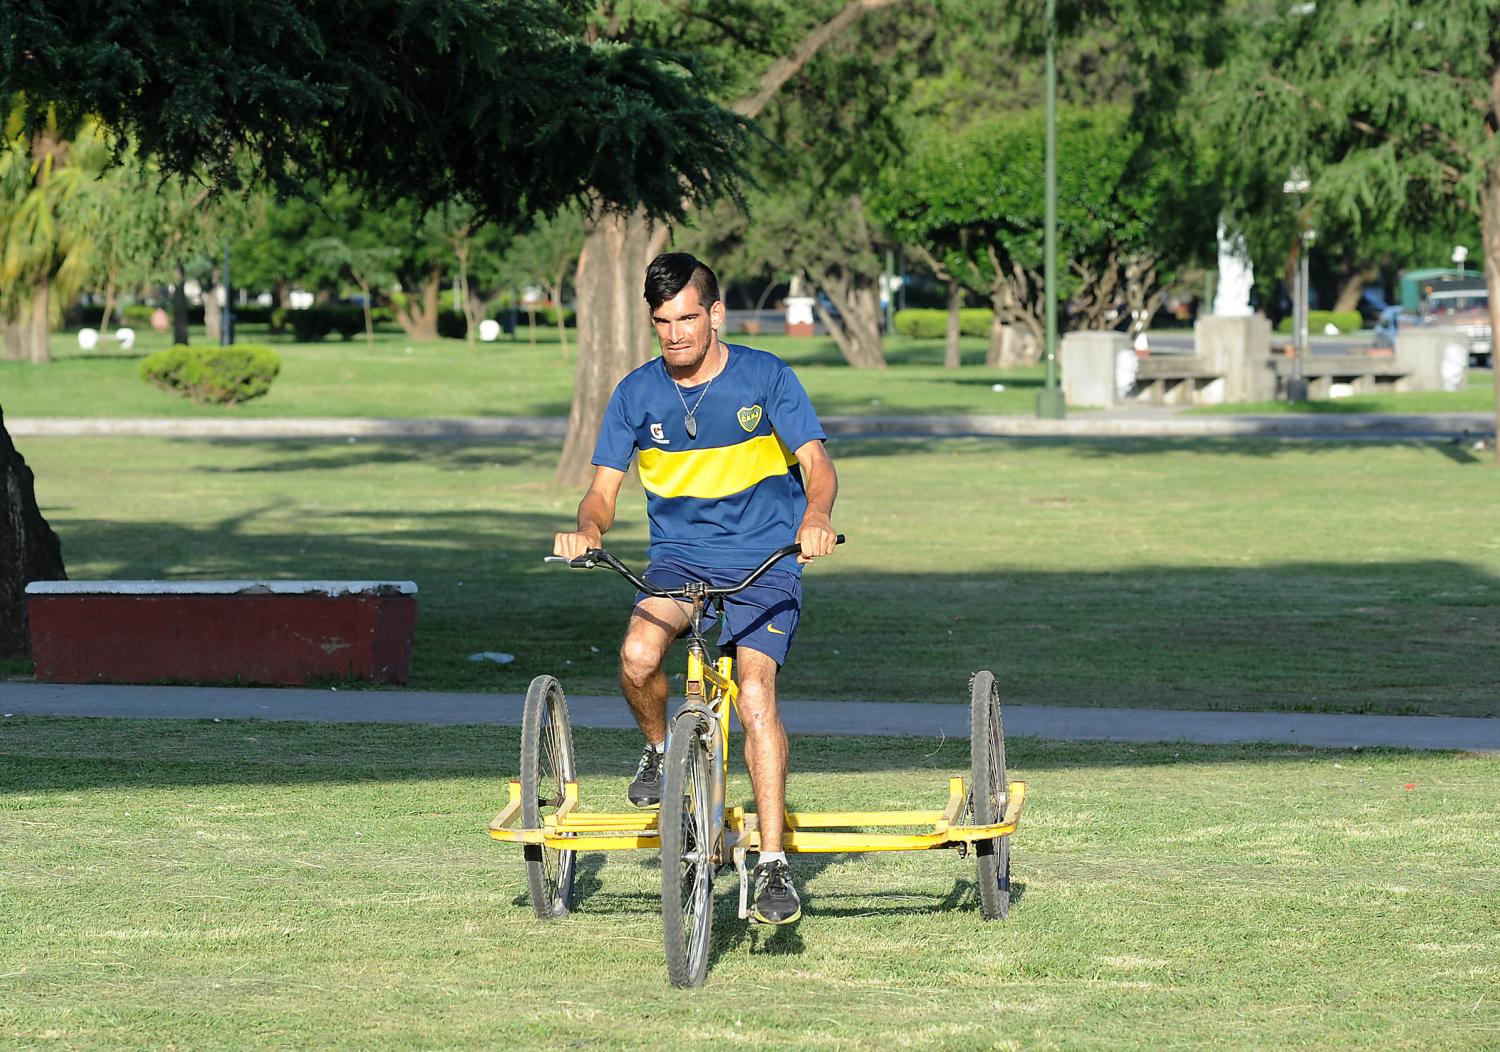 Luis en su bicicleta, la que utiliza para trasladarse y trabajar como cadete.